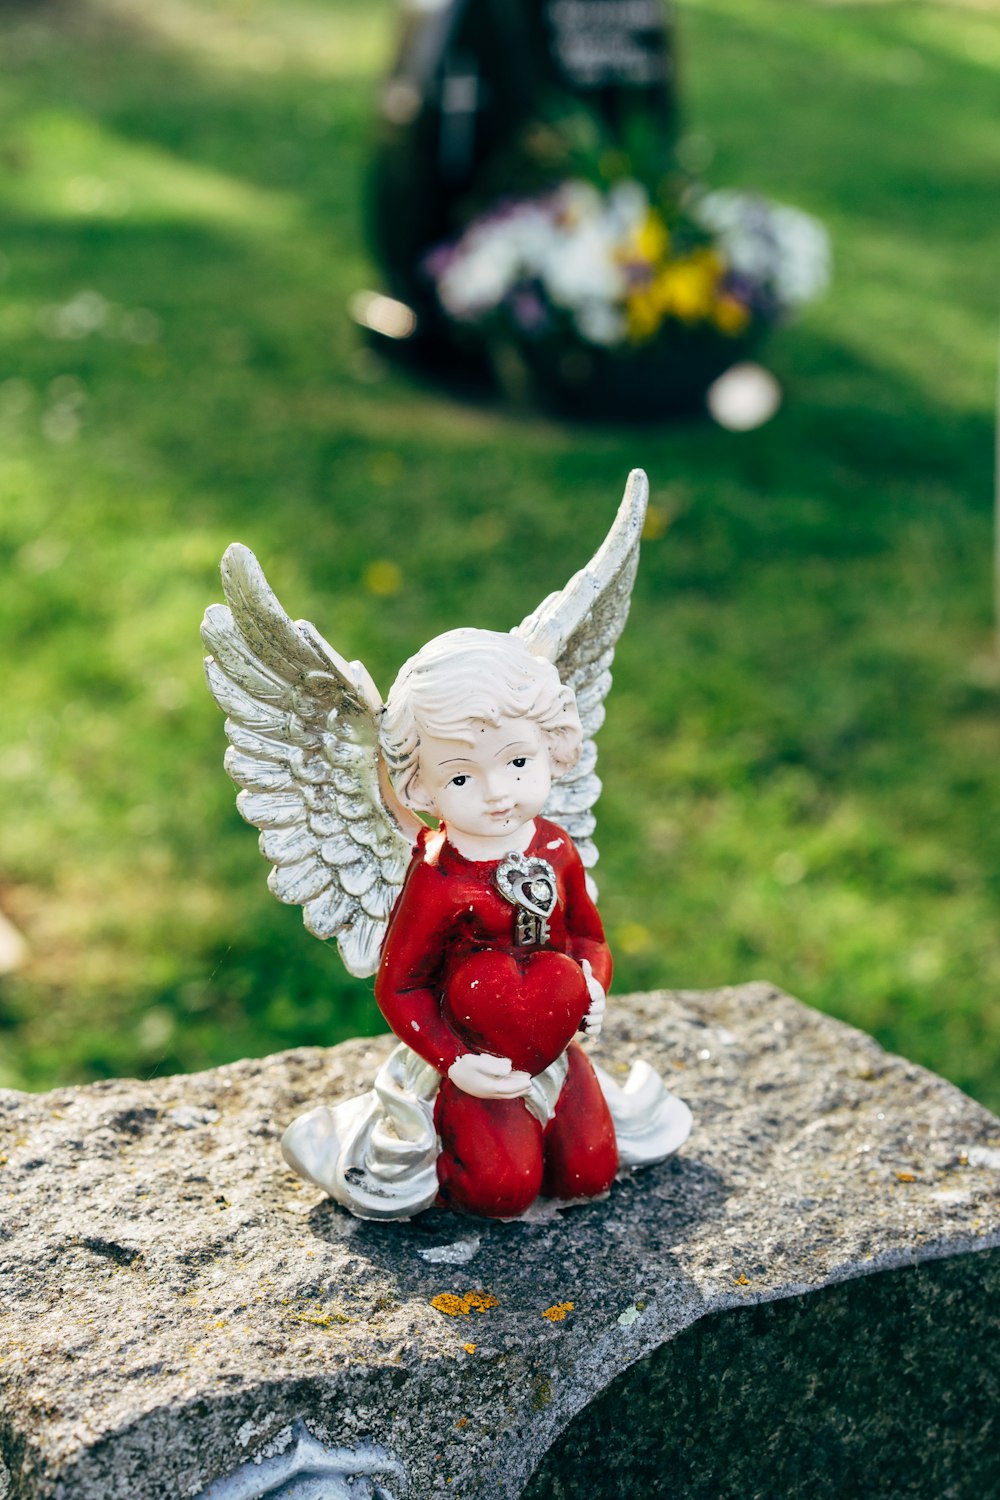 Engel Keramikfigur auf grauer Betonoberfläche